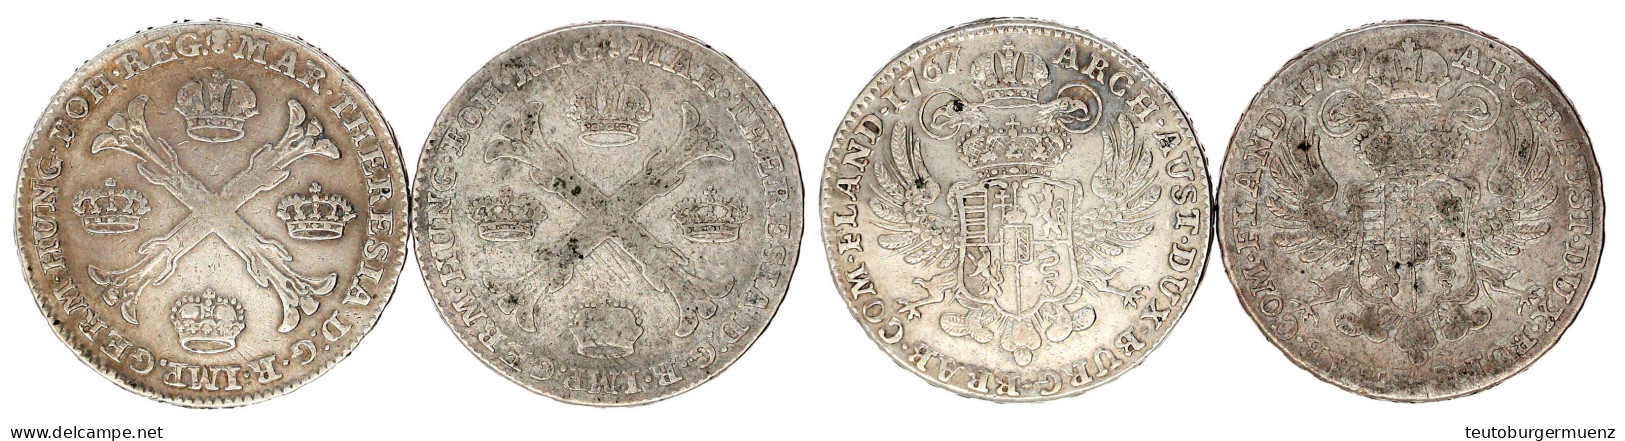 2 X Kronentaler: 1767 Und 1769, Brüssel. Sehr Schön Und Fast Sehr Schön. Davenport. 1282. - Gold Coins